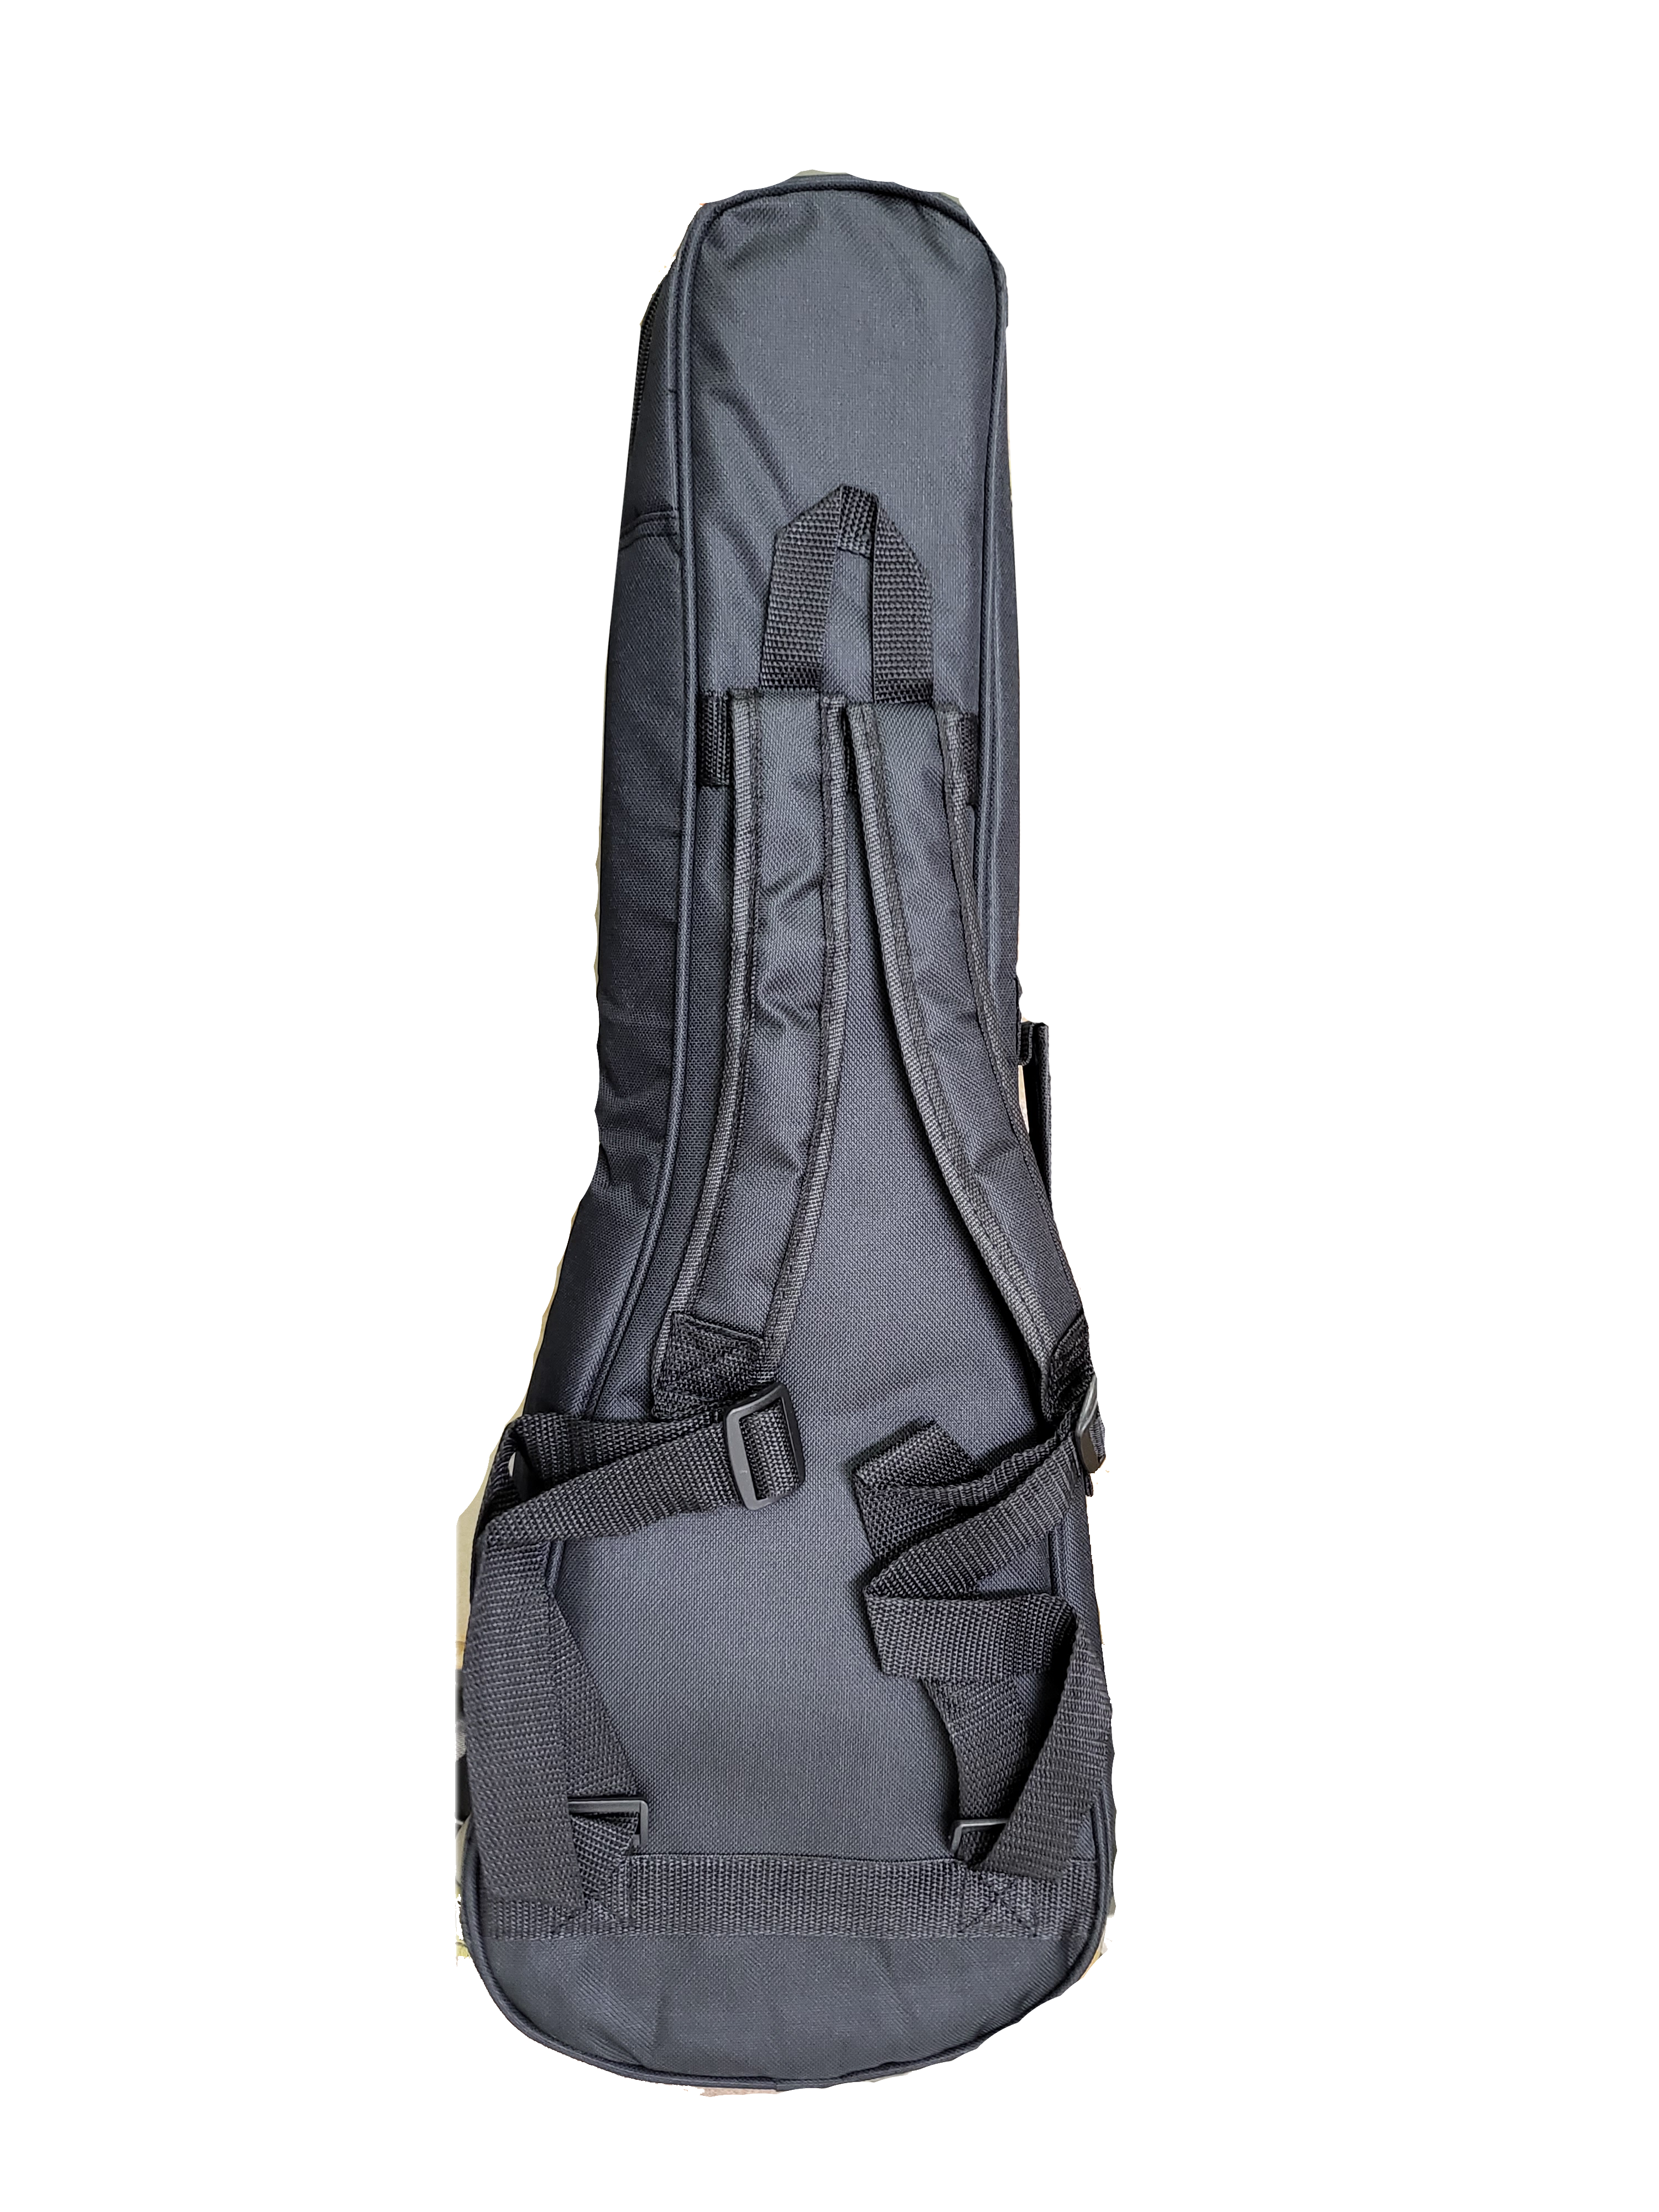 Original Gig Bag Co. Tenor Ukulele Gig Bag Soft Case with 10mm Padding & Shoulder Straps